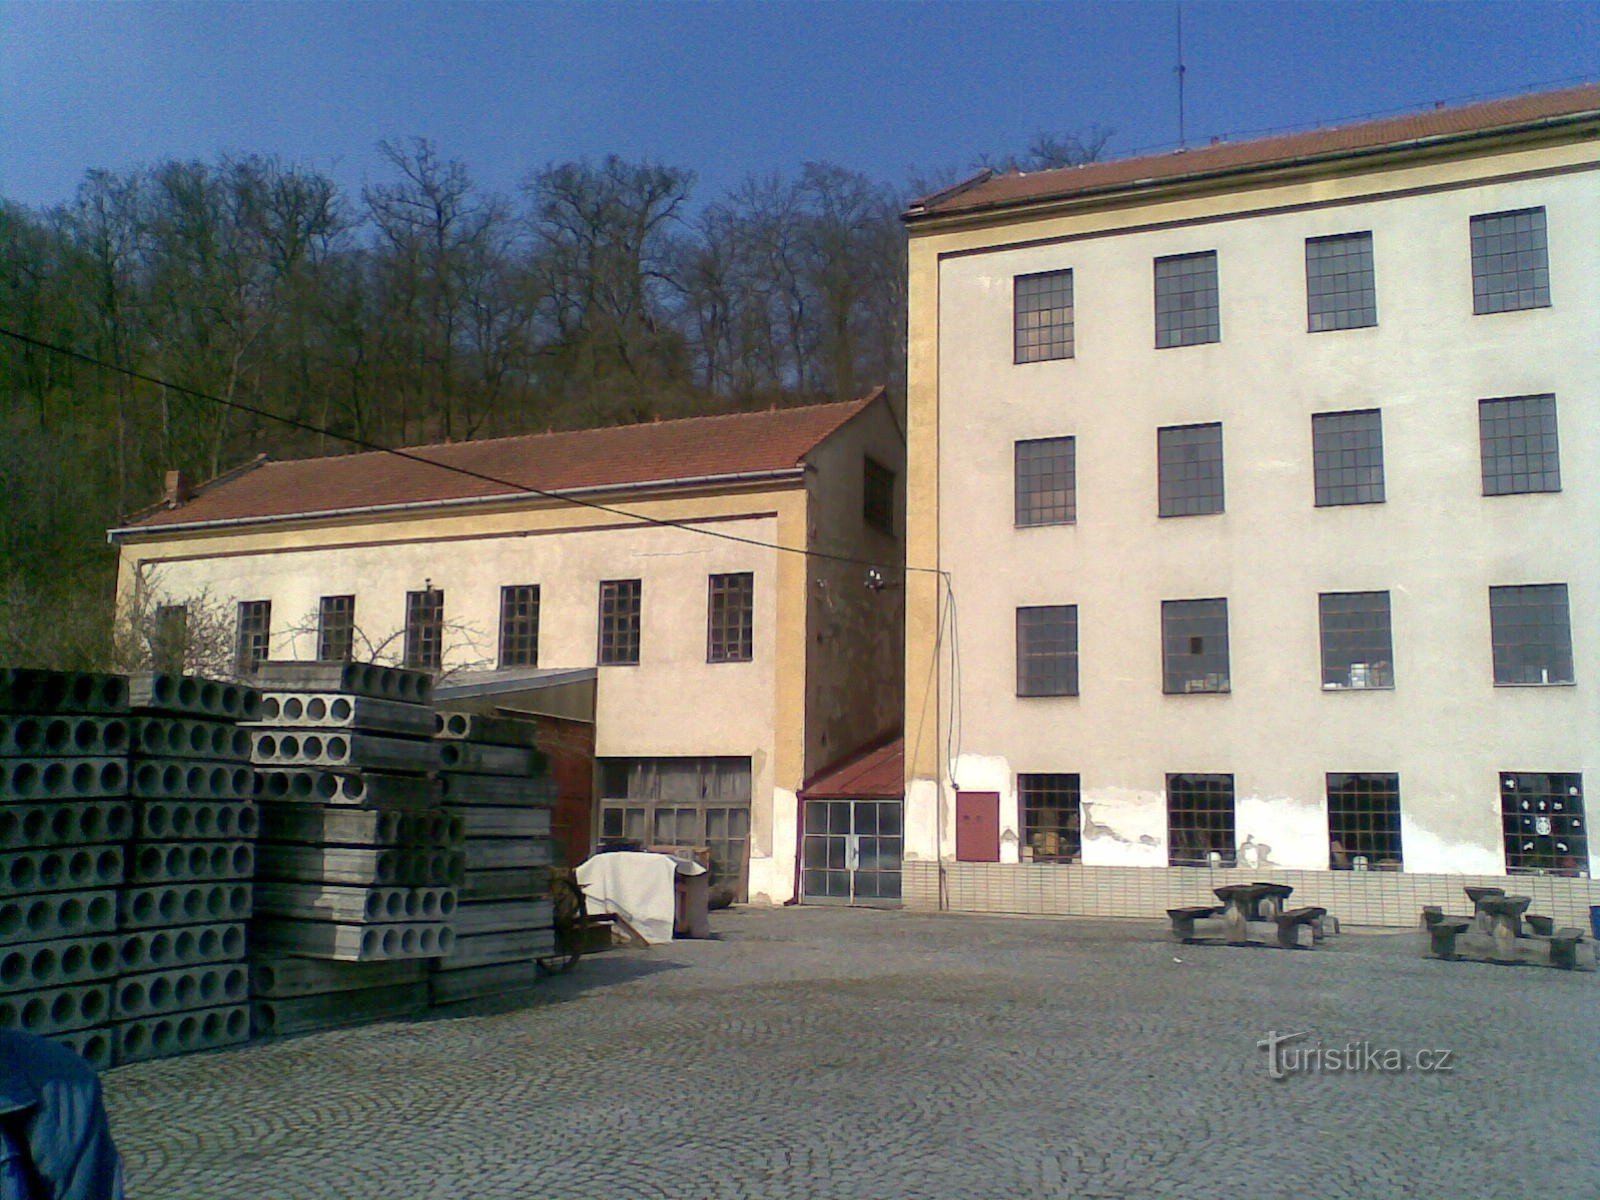 Walzenmühle von Jaroš